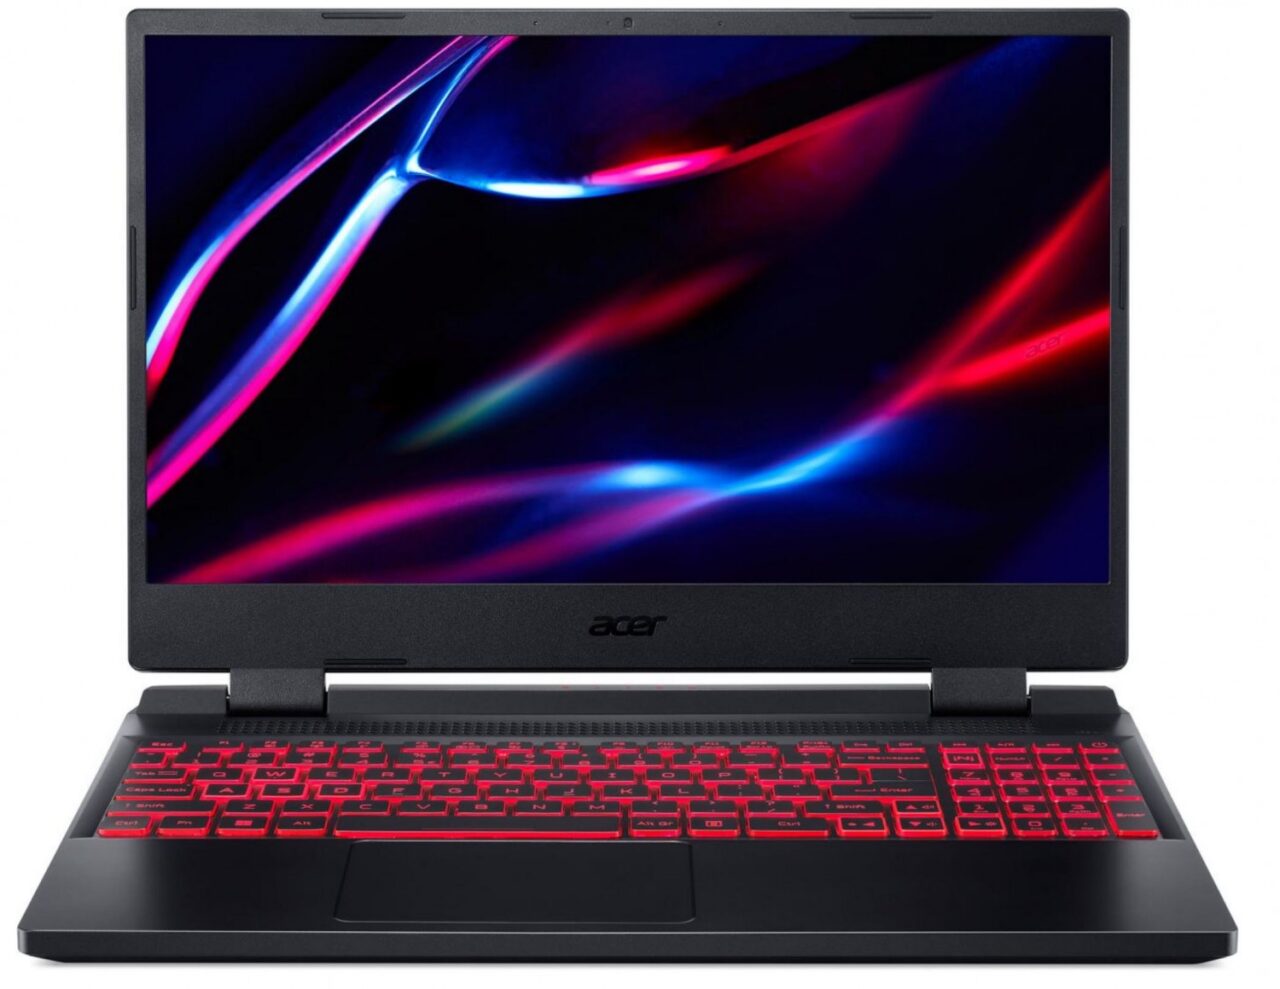 Laptop marki Acer z otwartą pokrywą i podświetlaną klawiaturą na czerwono przedstawiony na białym tle.